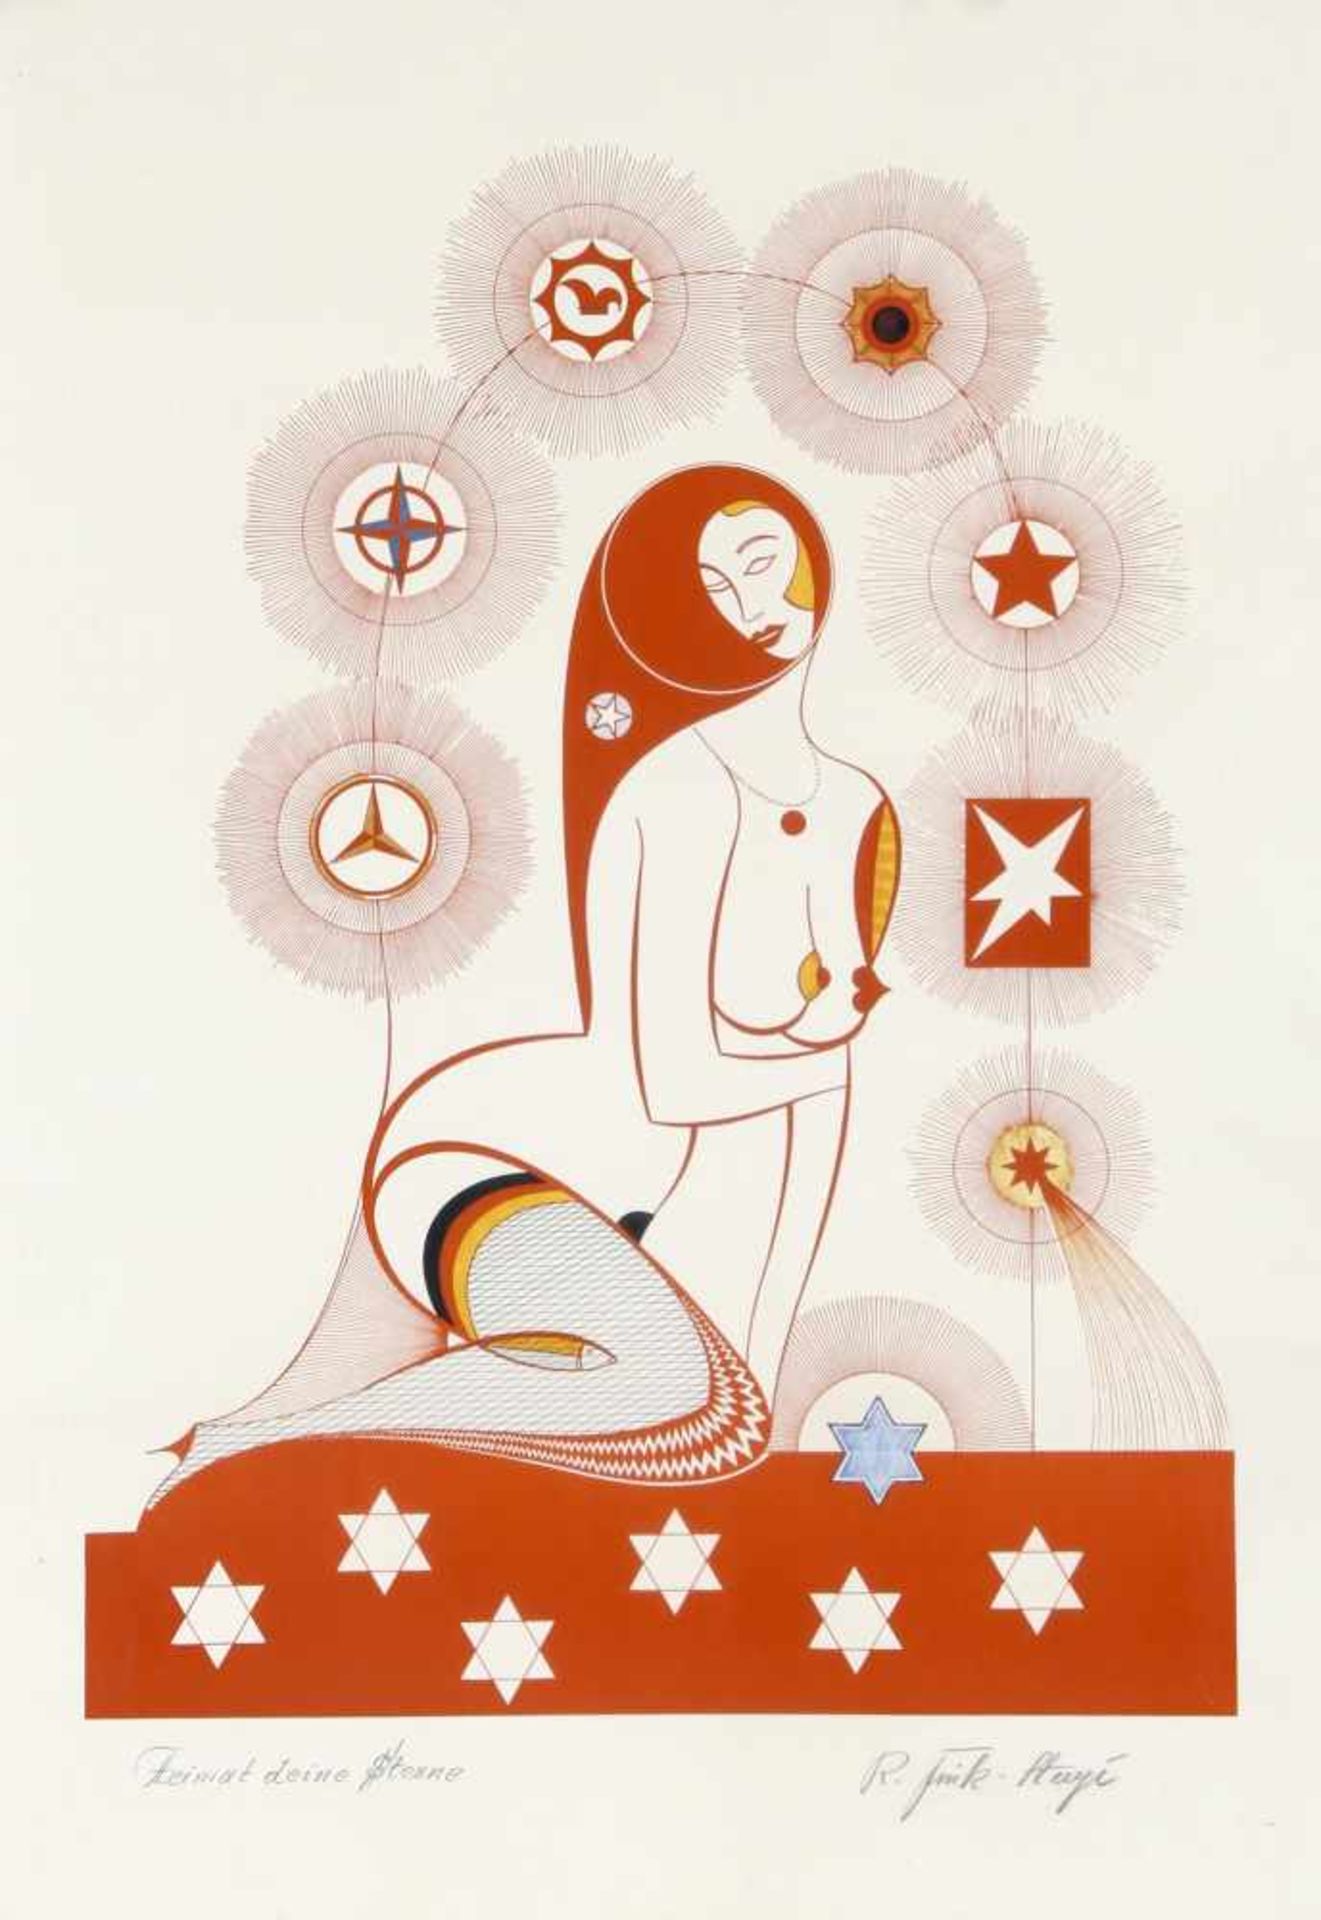 Vermutlich R. Fink - Stugé"Heimat deine Sterne", 20. Jh., Farblithographie, ca. 67 x 49 cm (